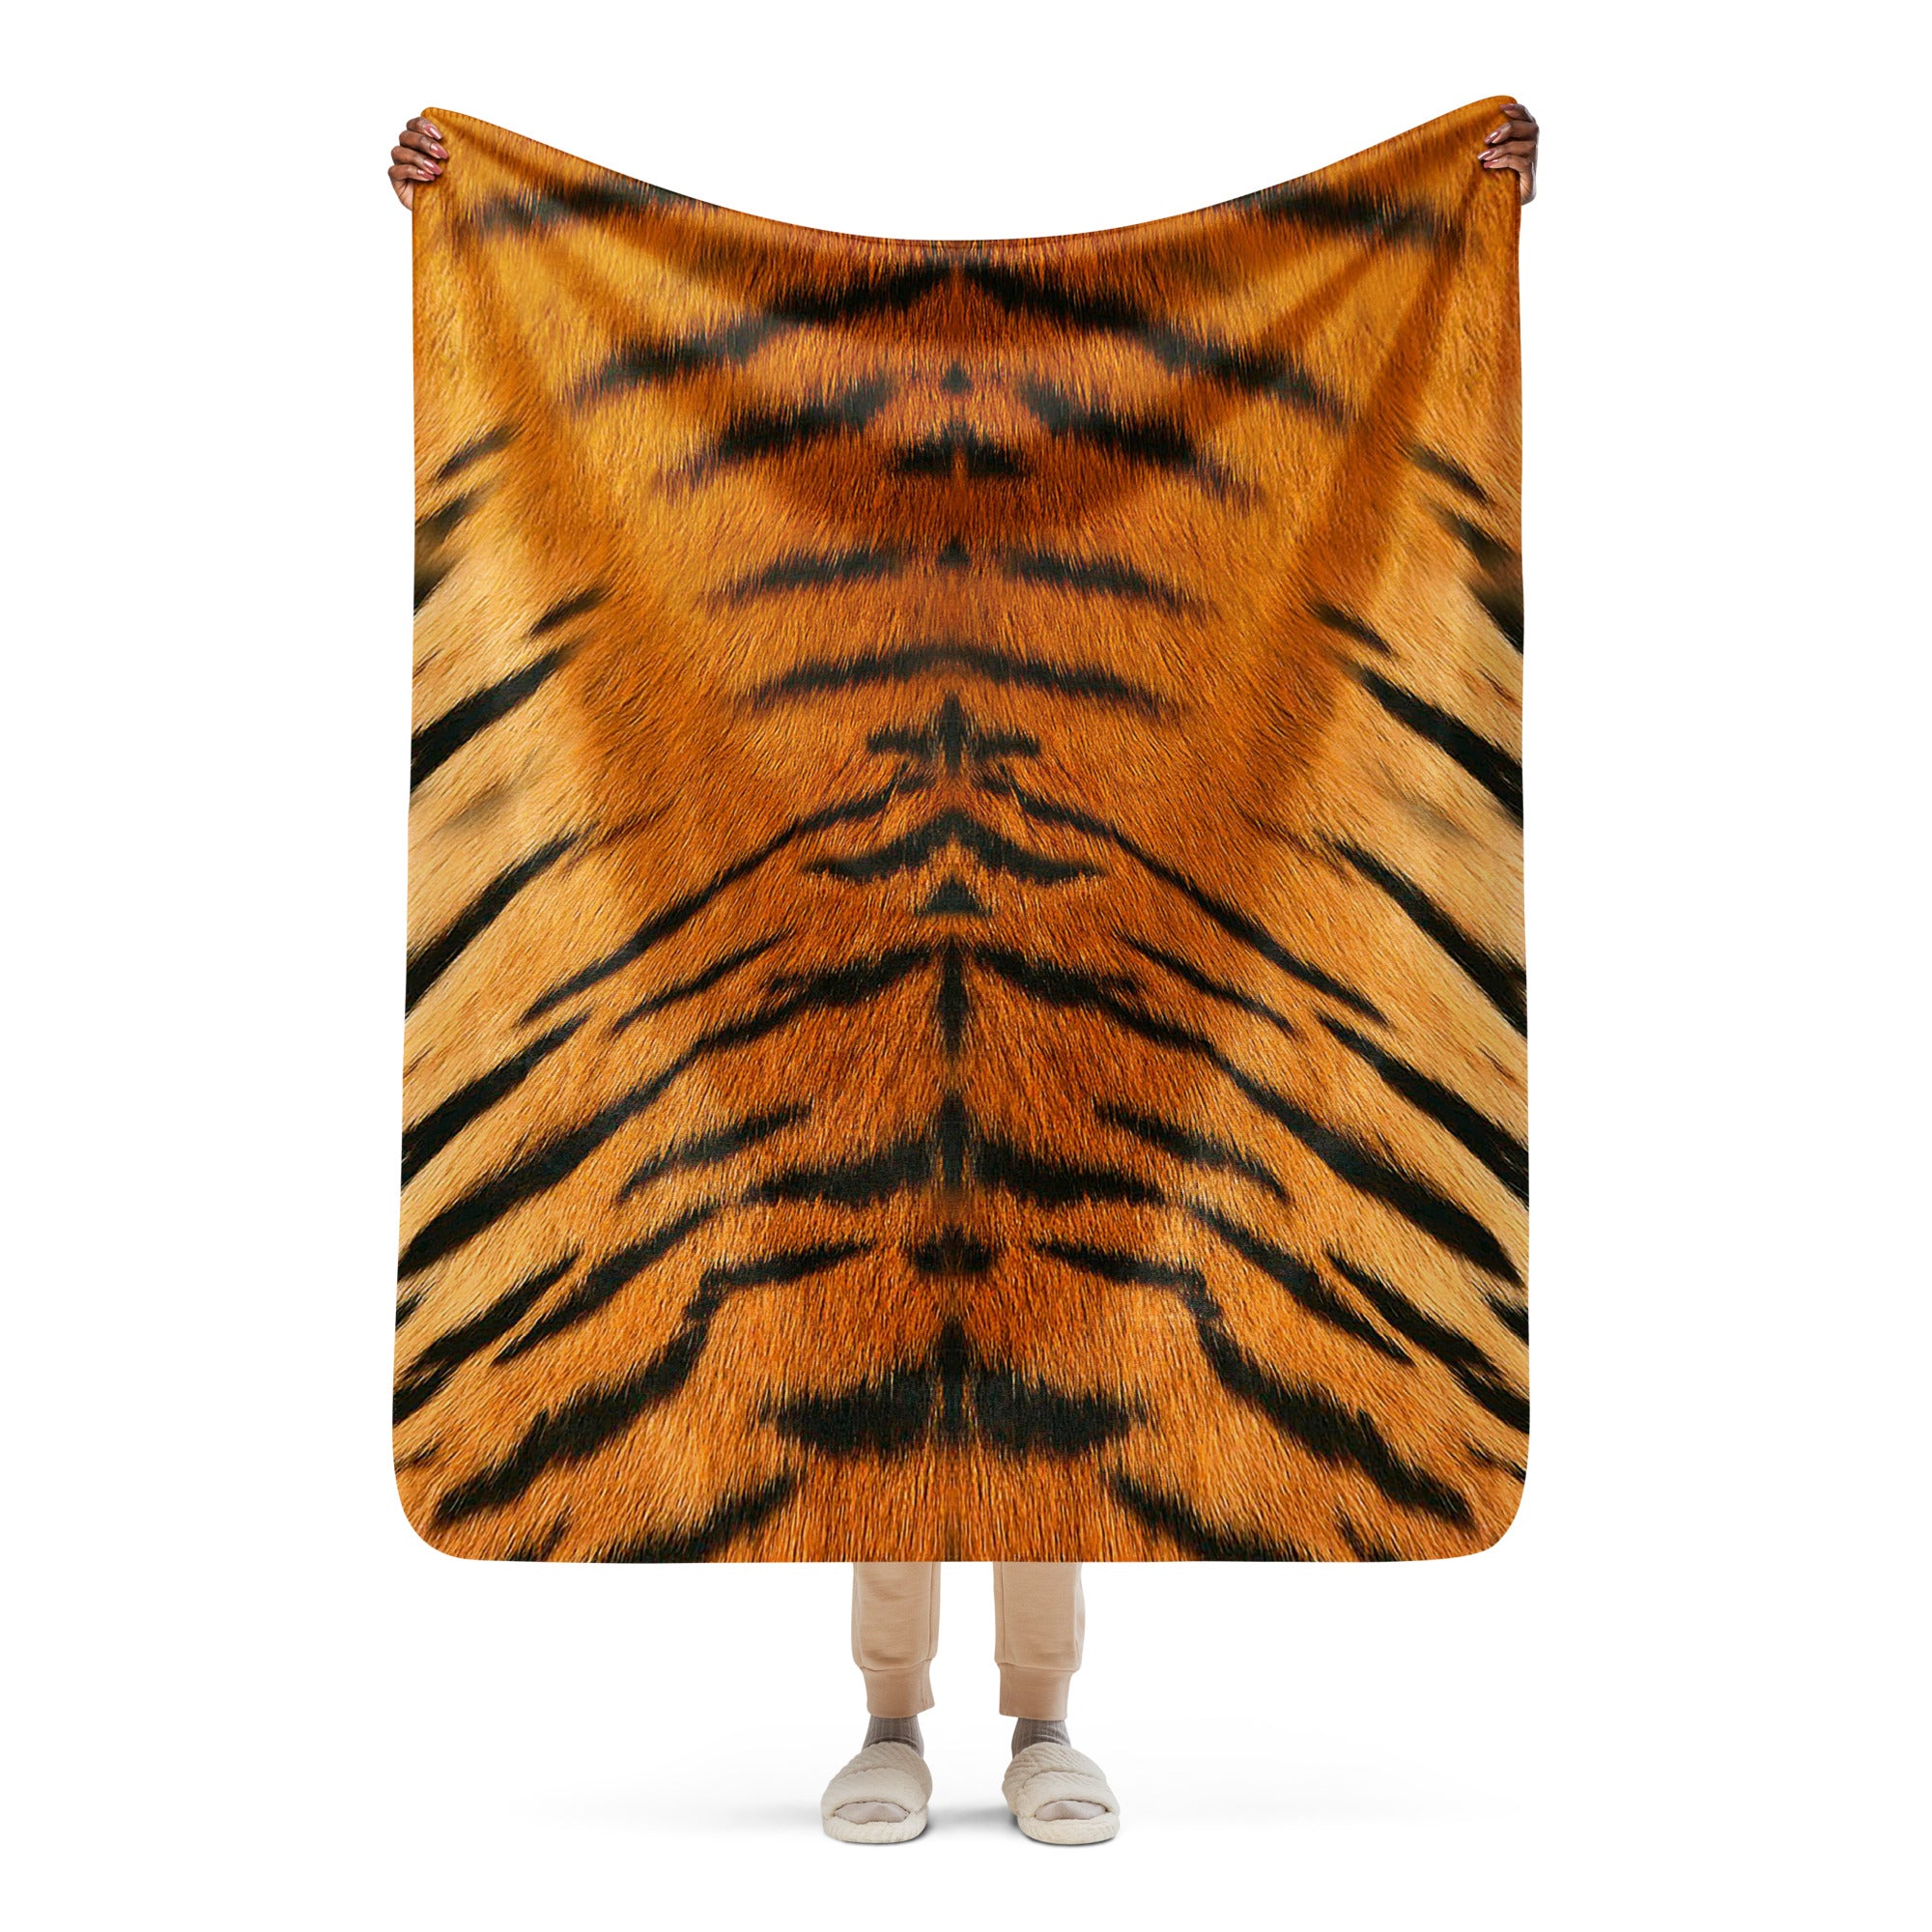 Cozy Tiger Print Sherpa blanket